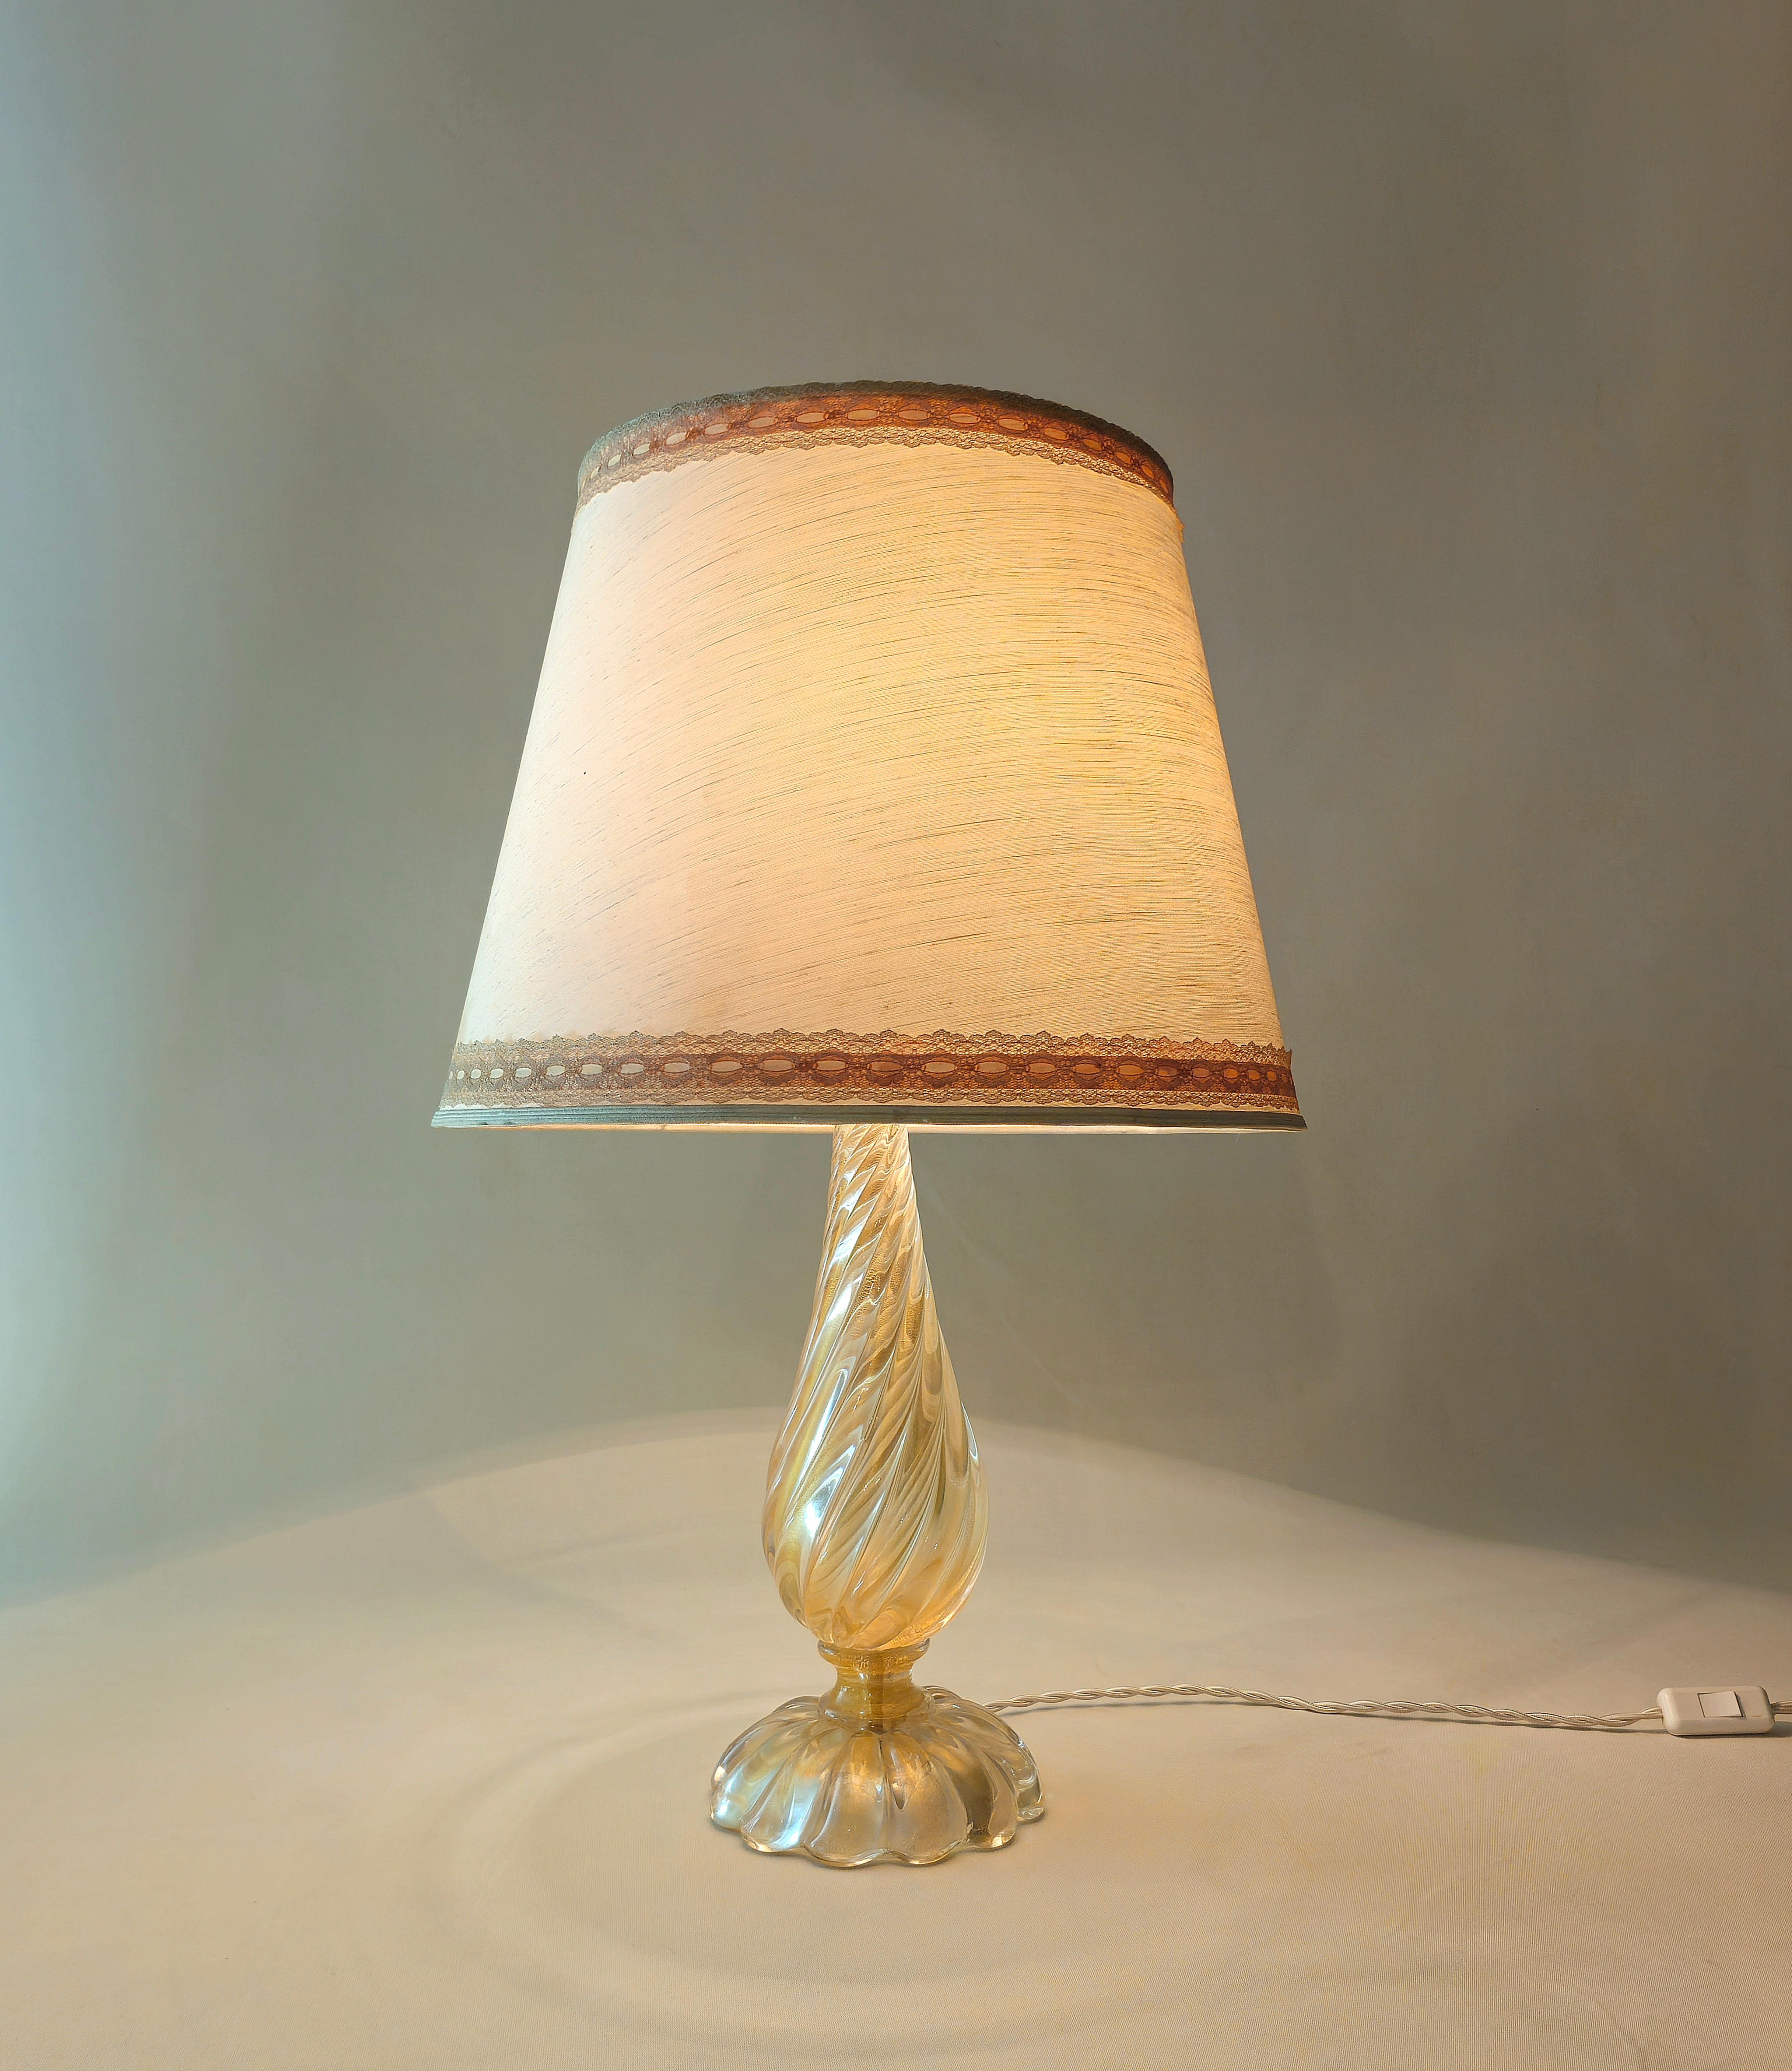 Barovier&Toso, Italie Années 1970.
Grande lampe de table E27 à 1 lumière en verre de Murano transparent et nervuré or, tige en forme de goutte, base circulaire nervurée et abat-jour en tissu ivoire avec bordure brodée.

Note : Nous essayons d'offrir